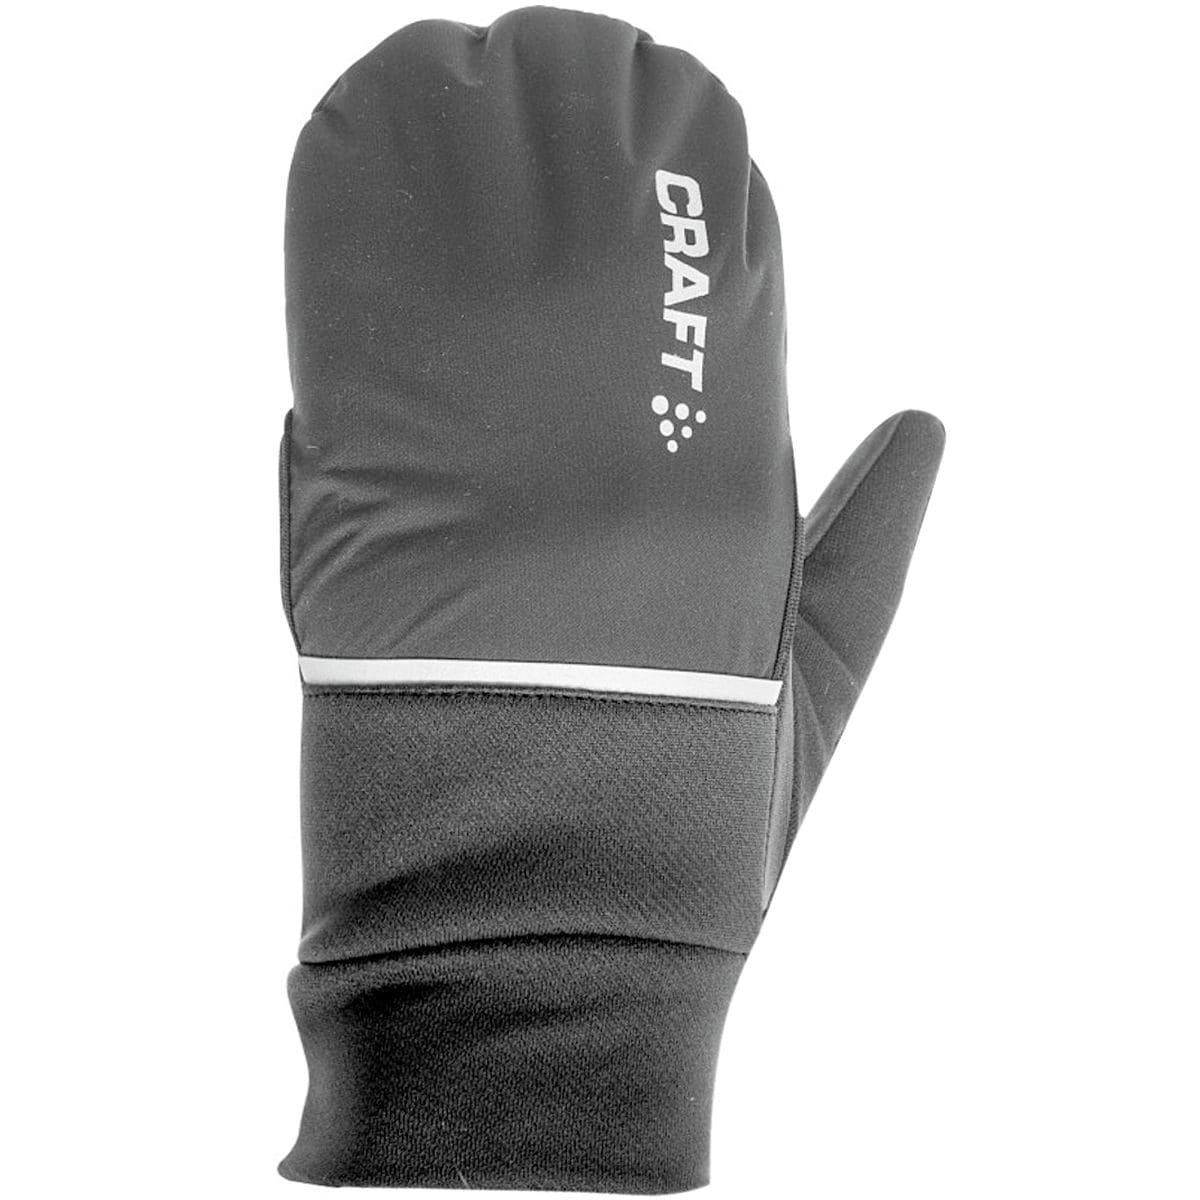 Craft Hybrid Weather Glove - Men's